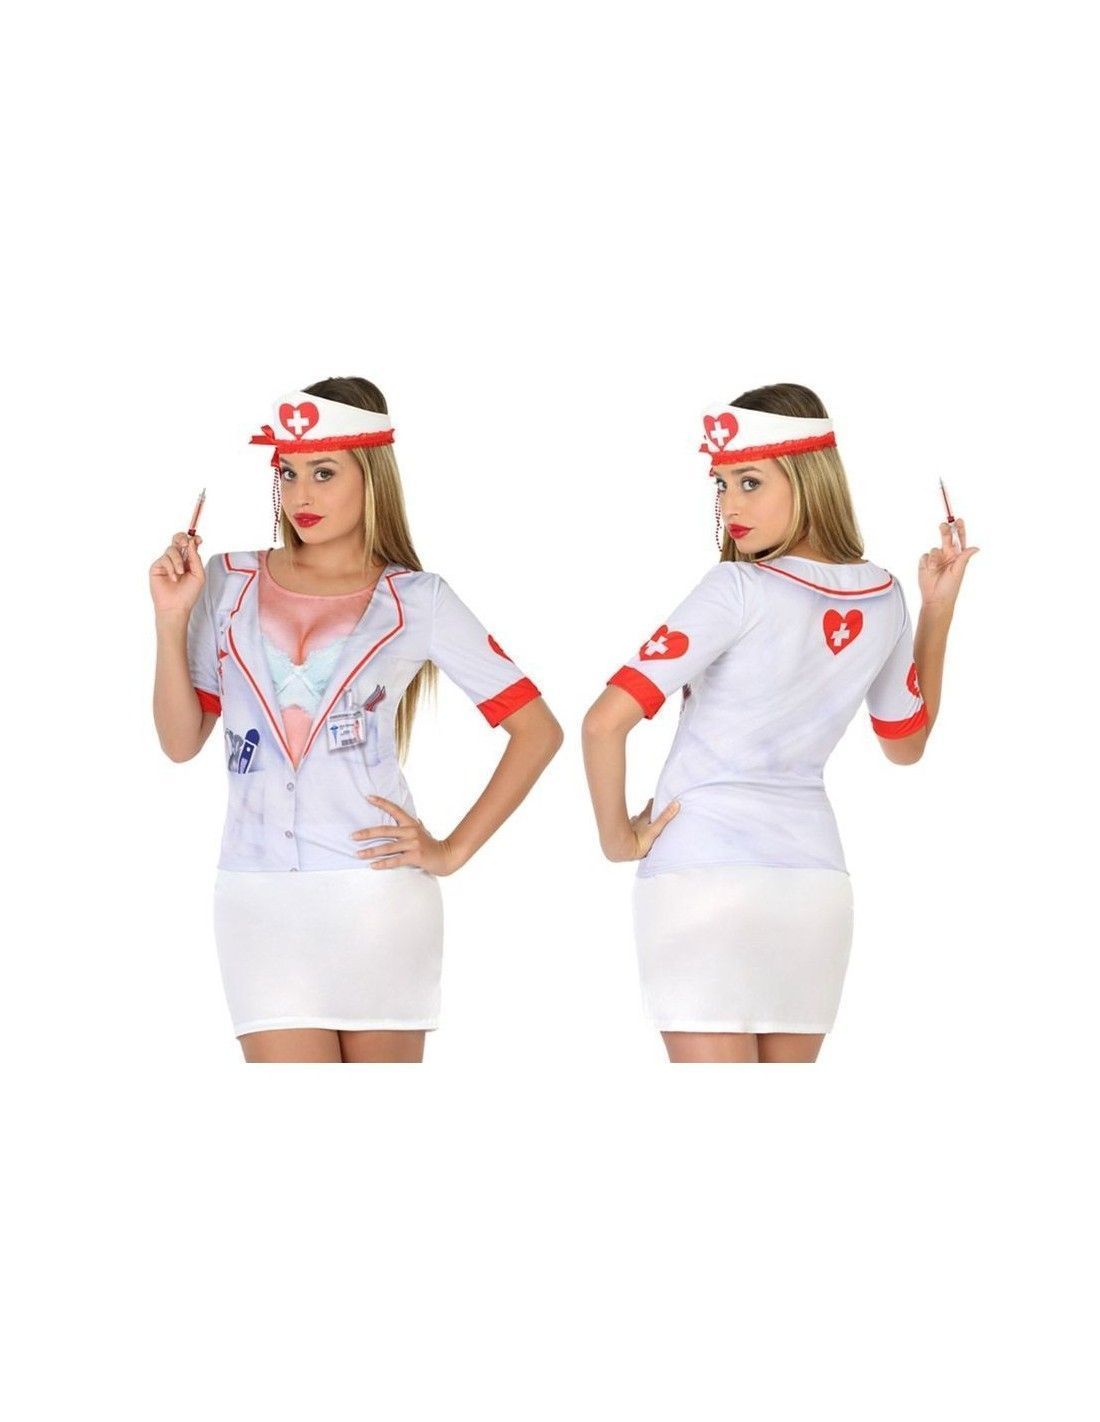 mezcla Subrayar Credencial Camiseta disfraz de Enfermera